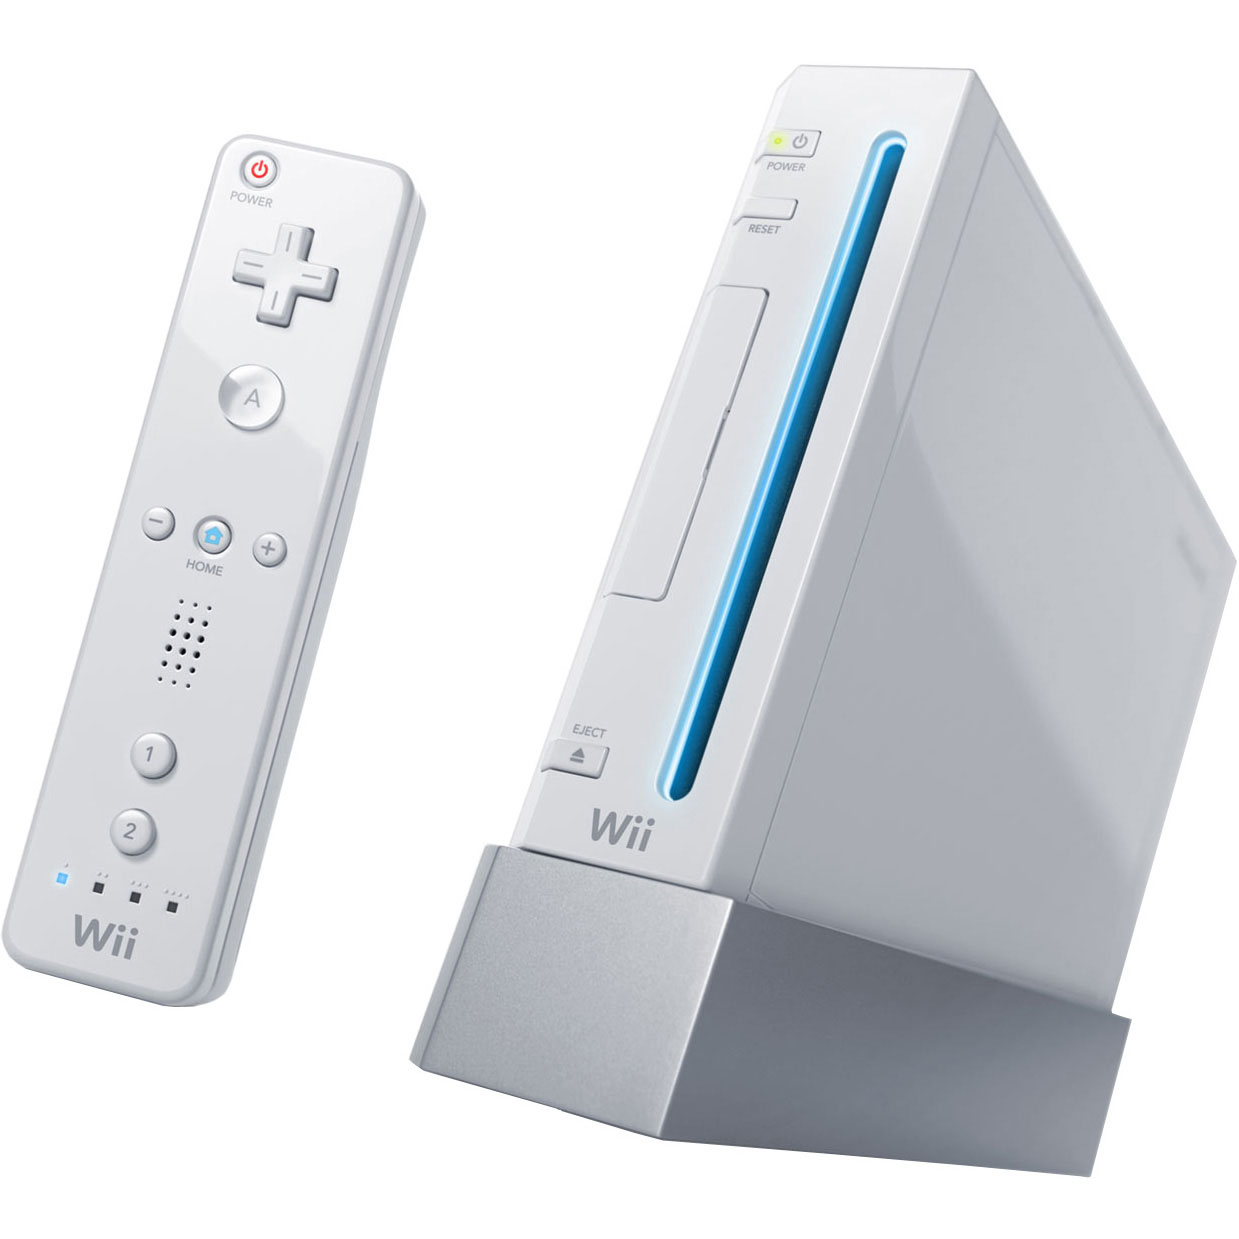 Review Nintendo Wii U